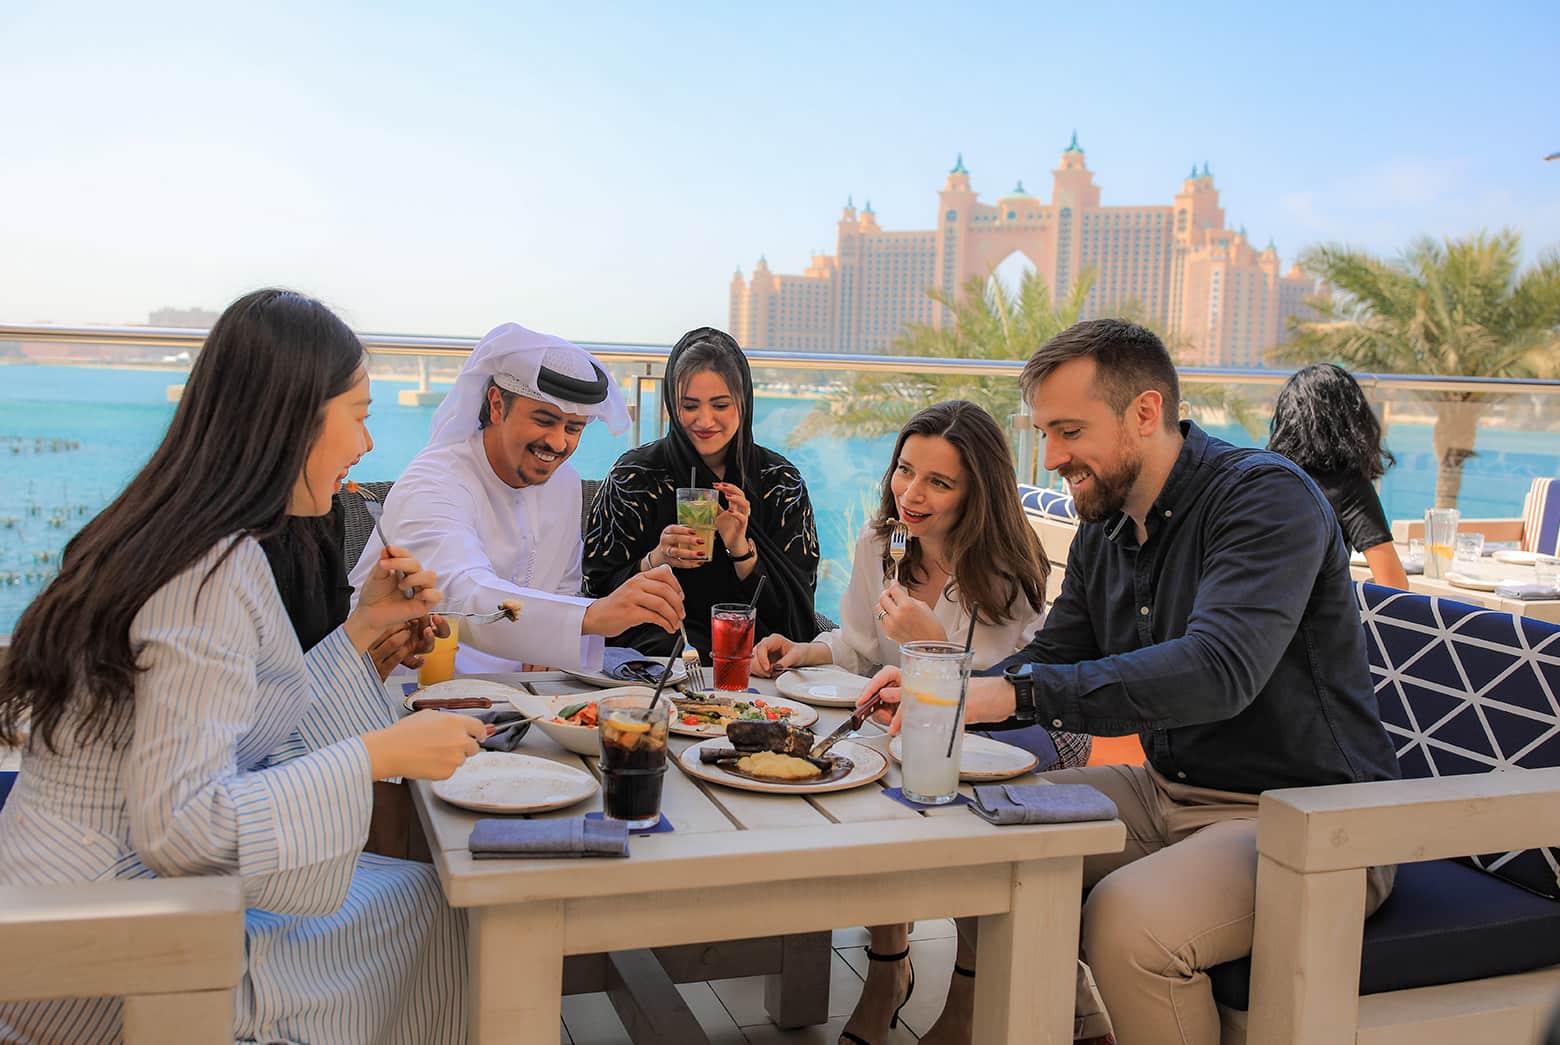 Dubai Food Festival 2024